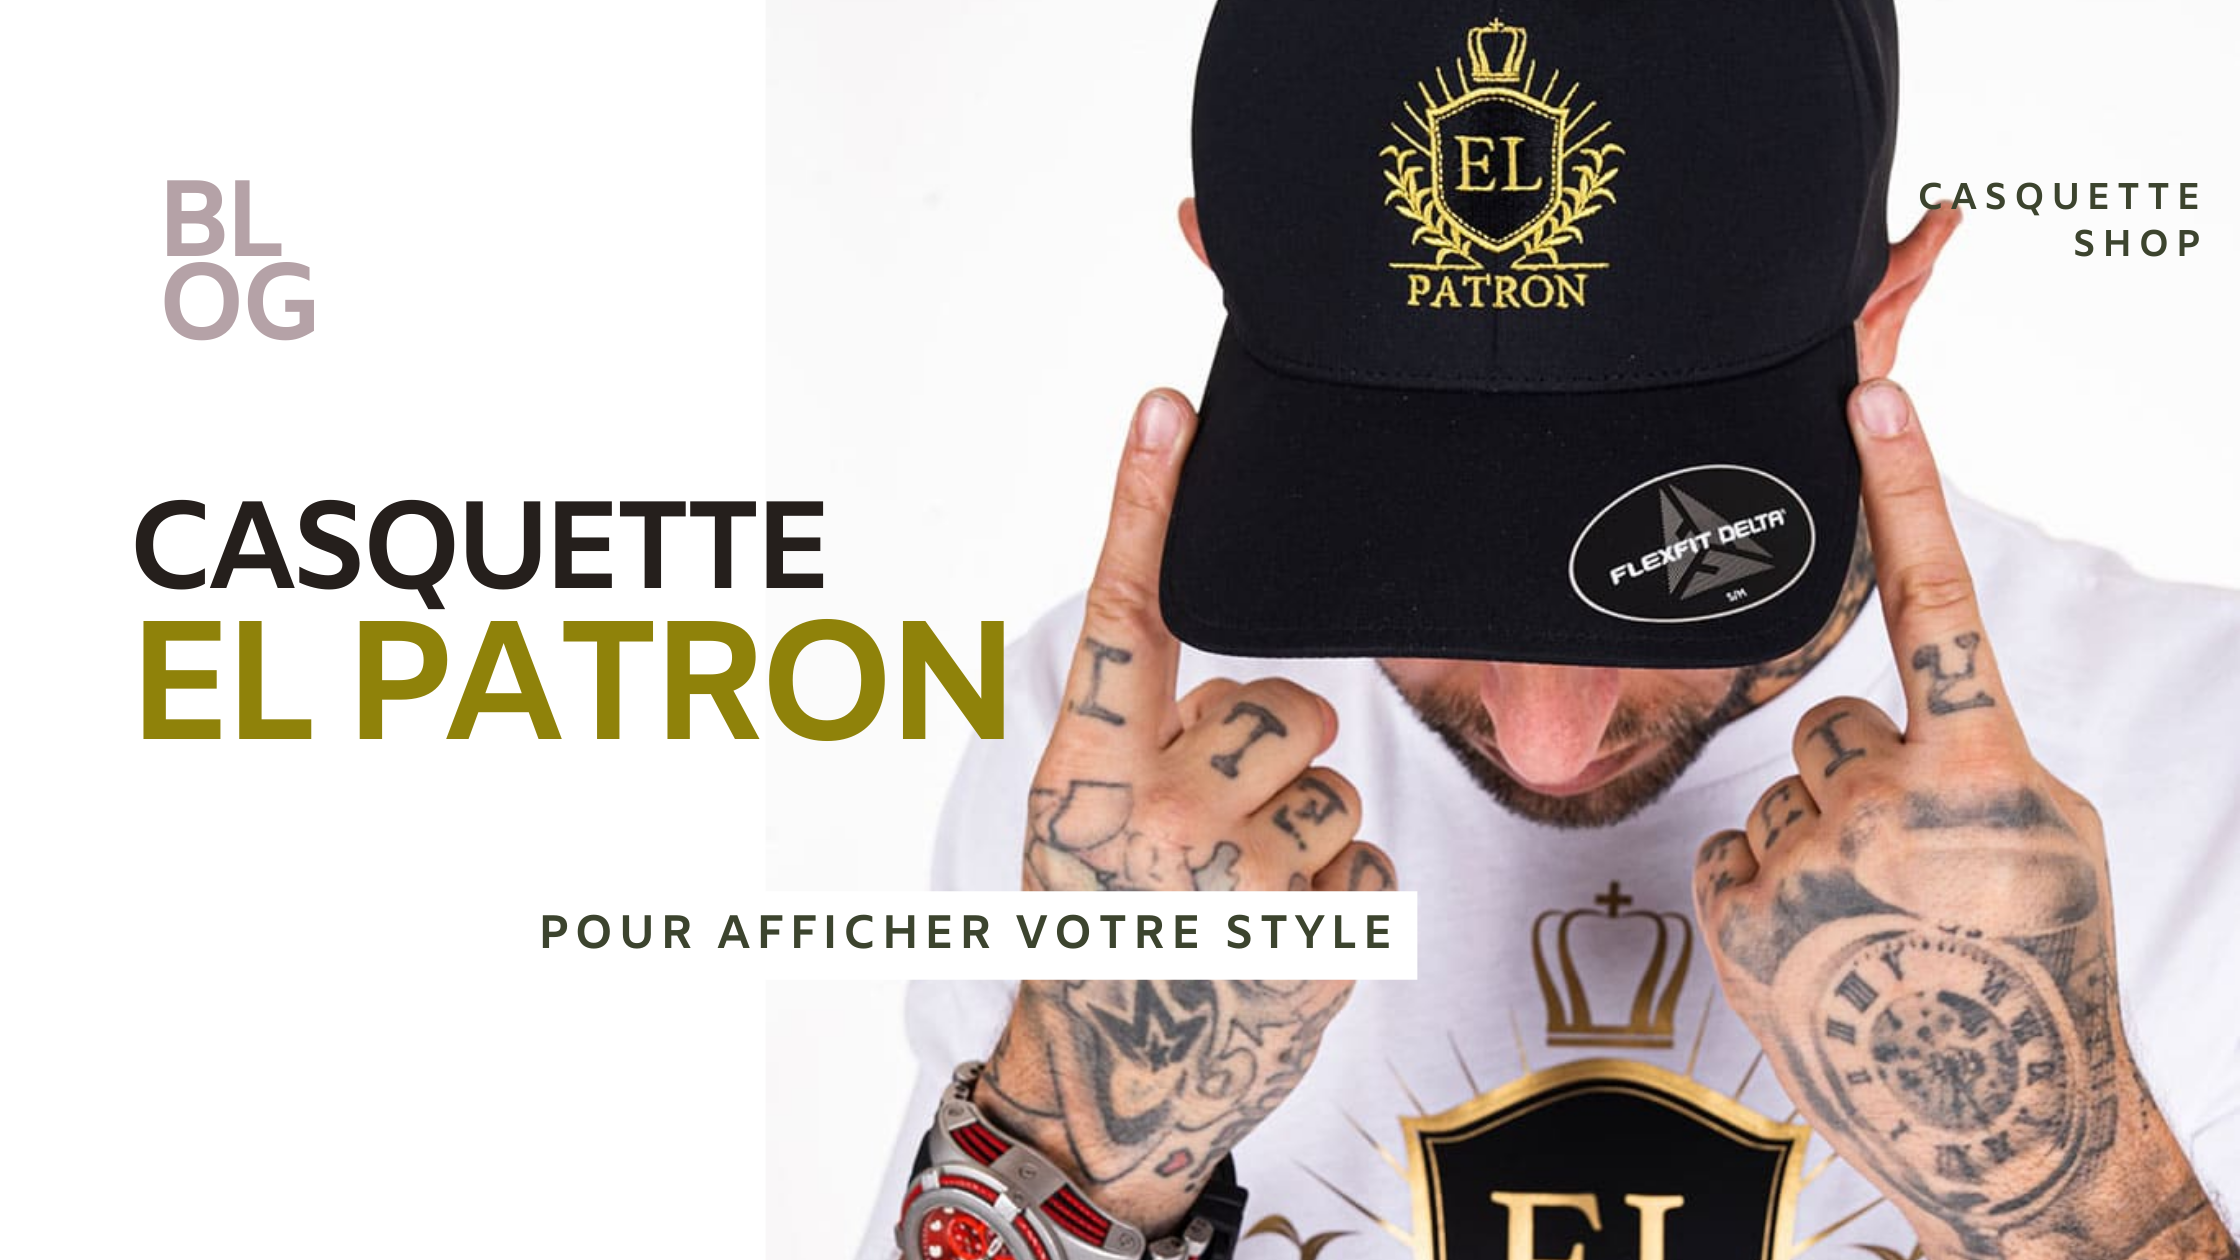 Casquette El Patron : L'Élégance au Service du Style